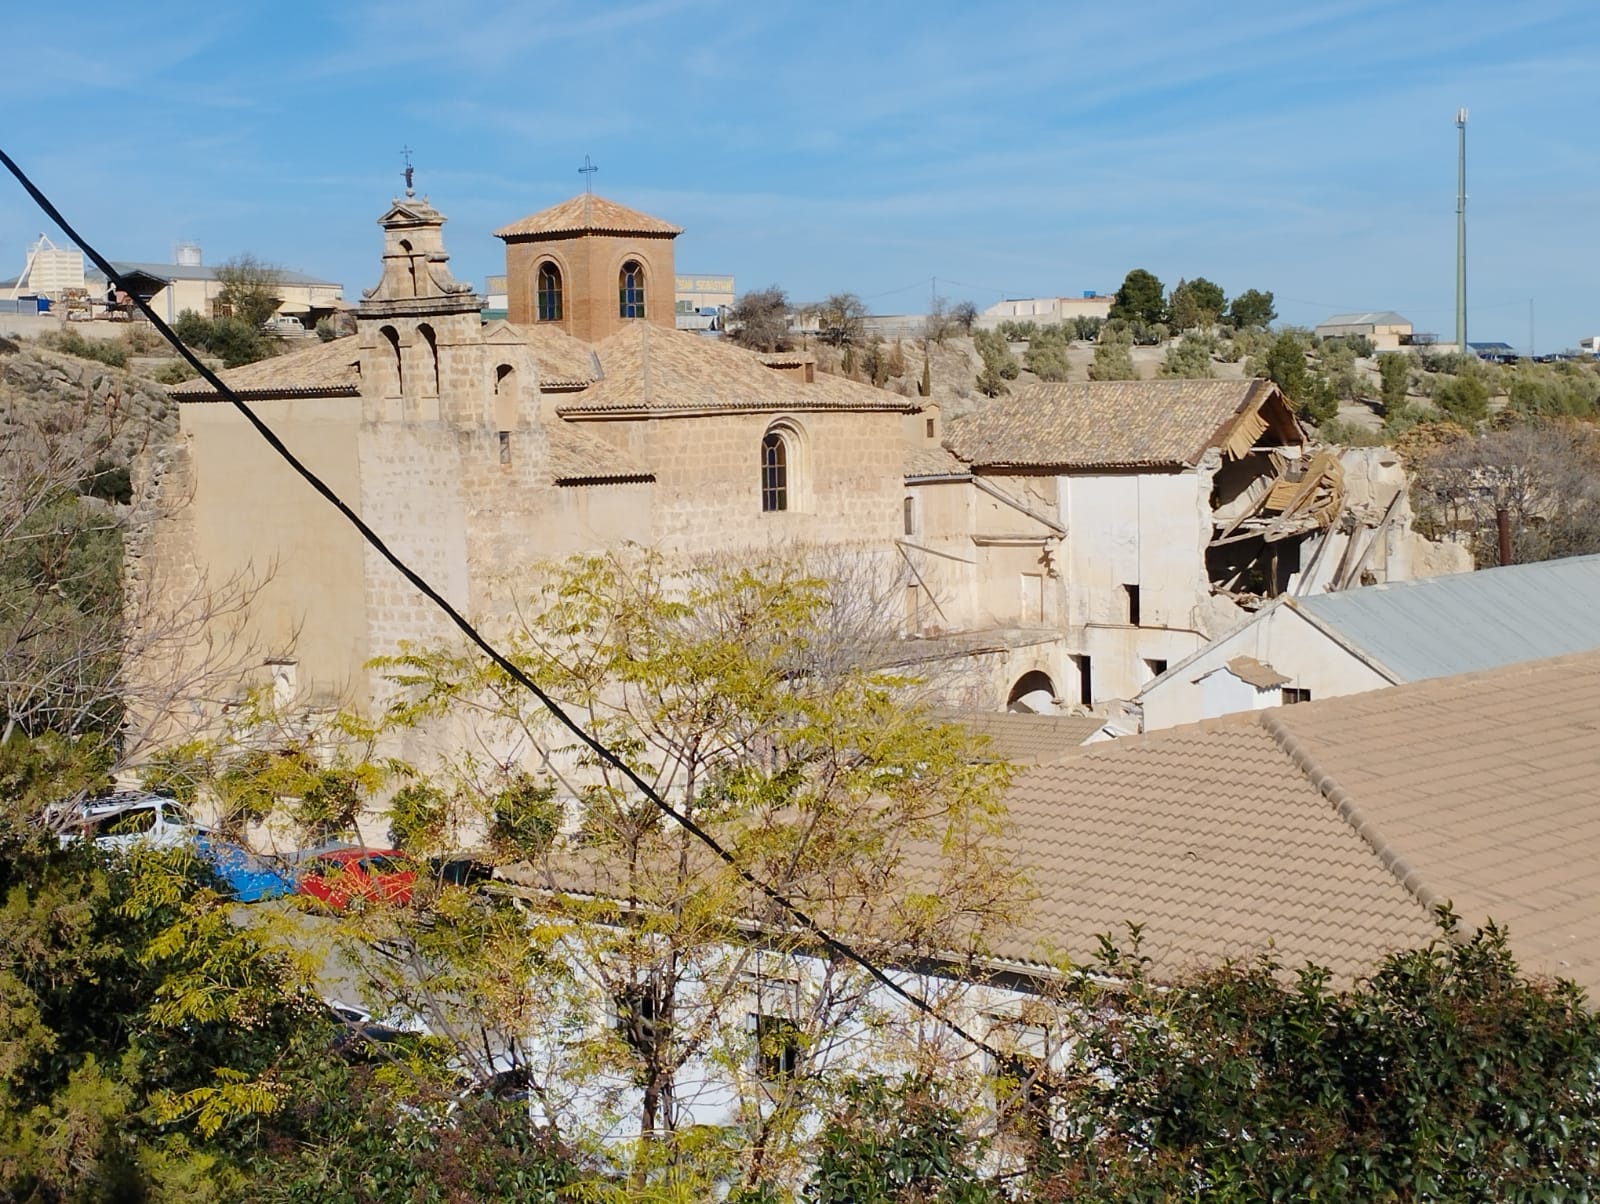 El PSOE denuncia que la recuperación del Convento de Santo Domingo lleva 2 años y medio paralizada